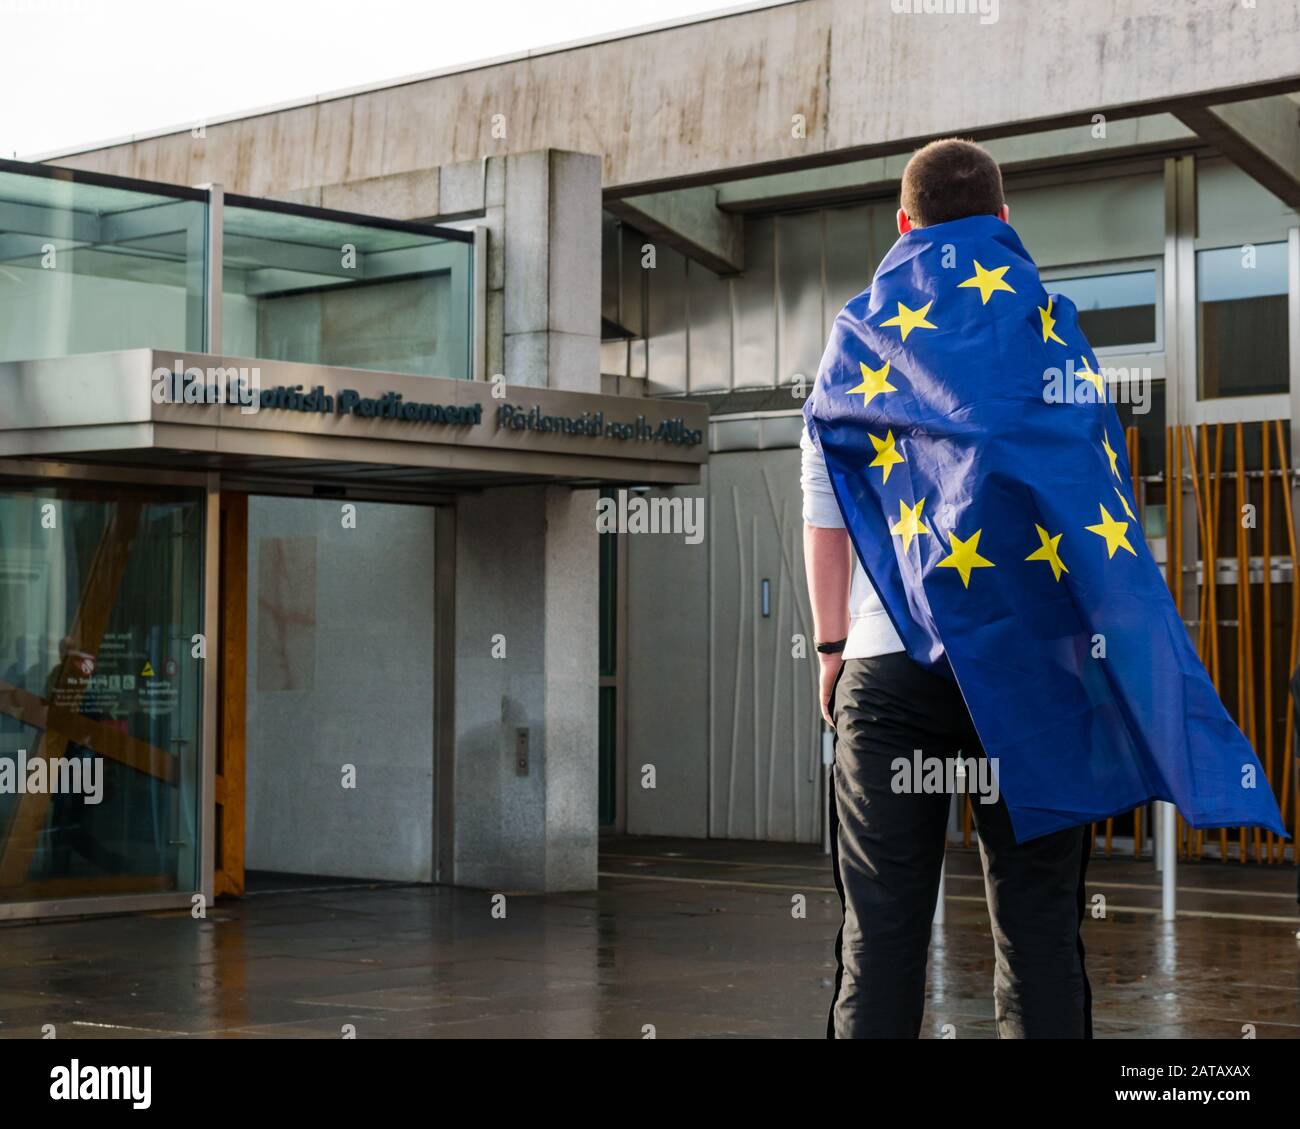 Un écolier a drapé dans le drapeau de l'Union européenne au parlement écossais le jour du Brexit, Holyrood, Édimbourg, Écosse, Royaume-Uni Banque D'Images